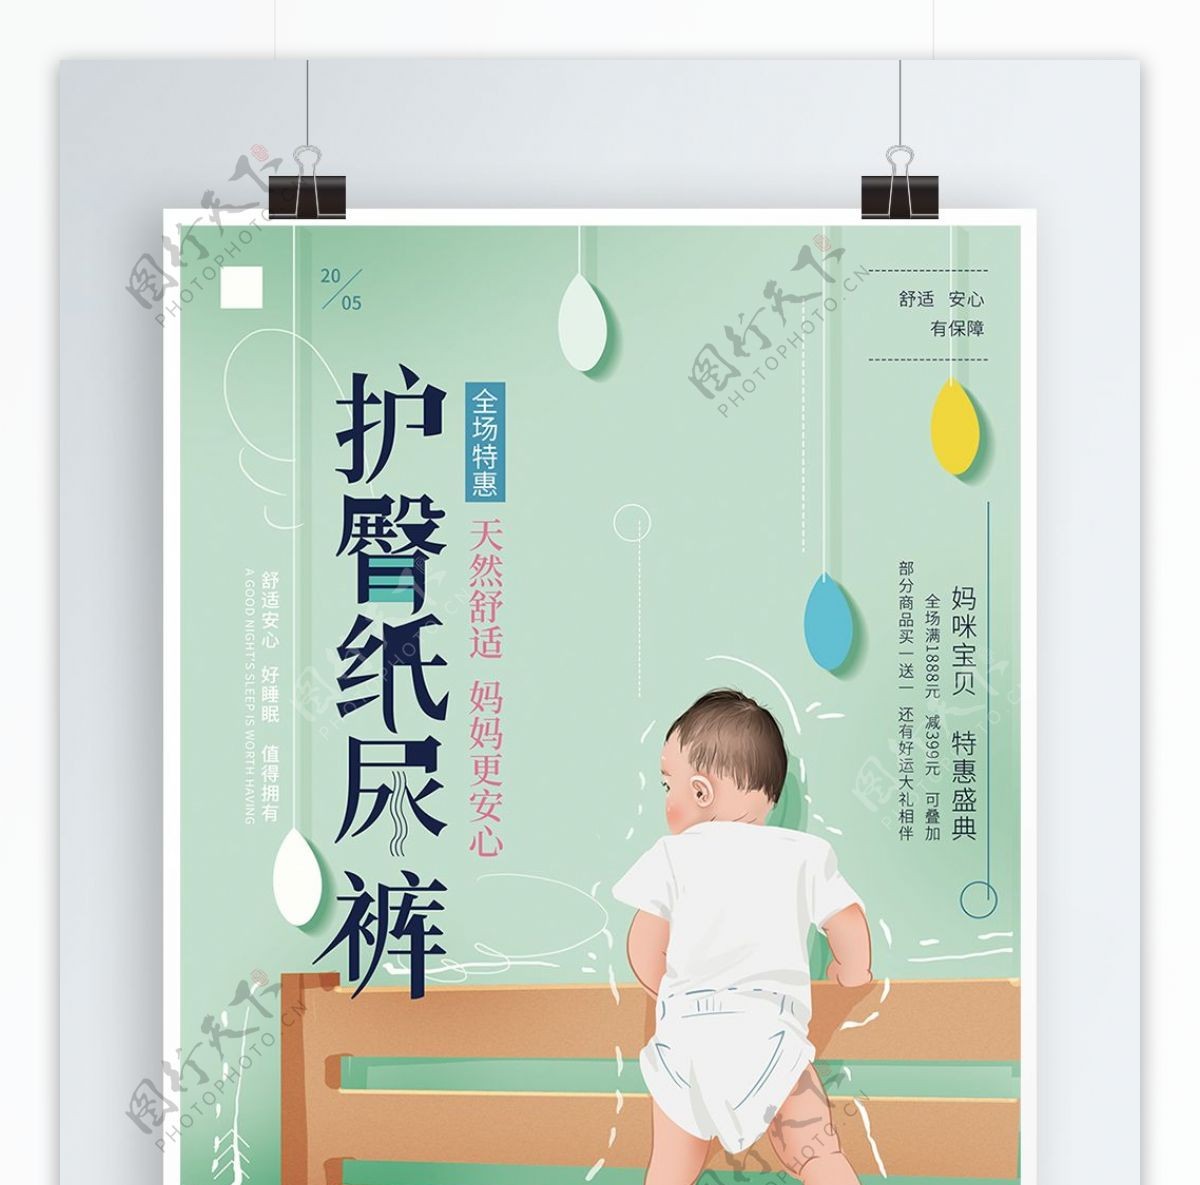 原创手绘清新婴儿纸尿裤促销海报